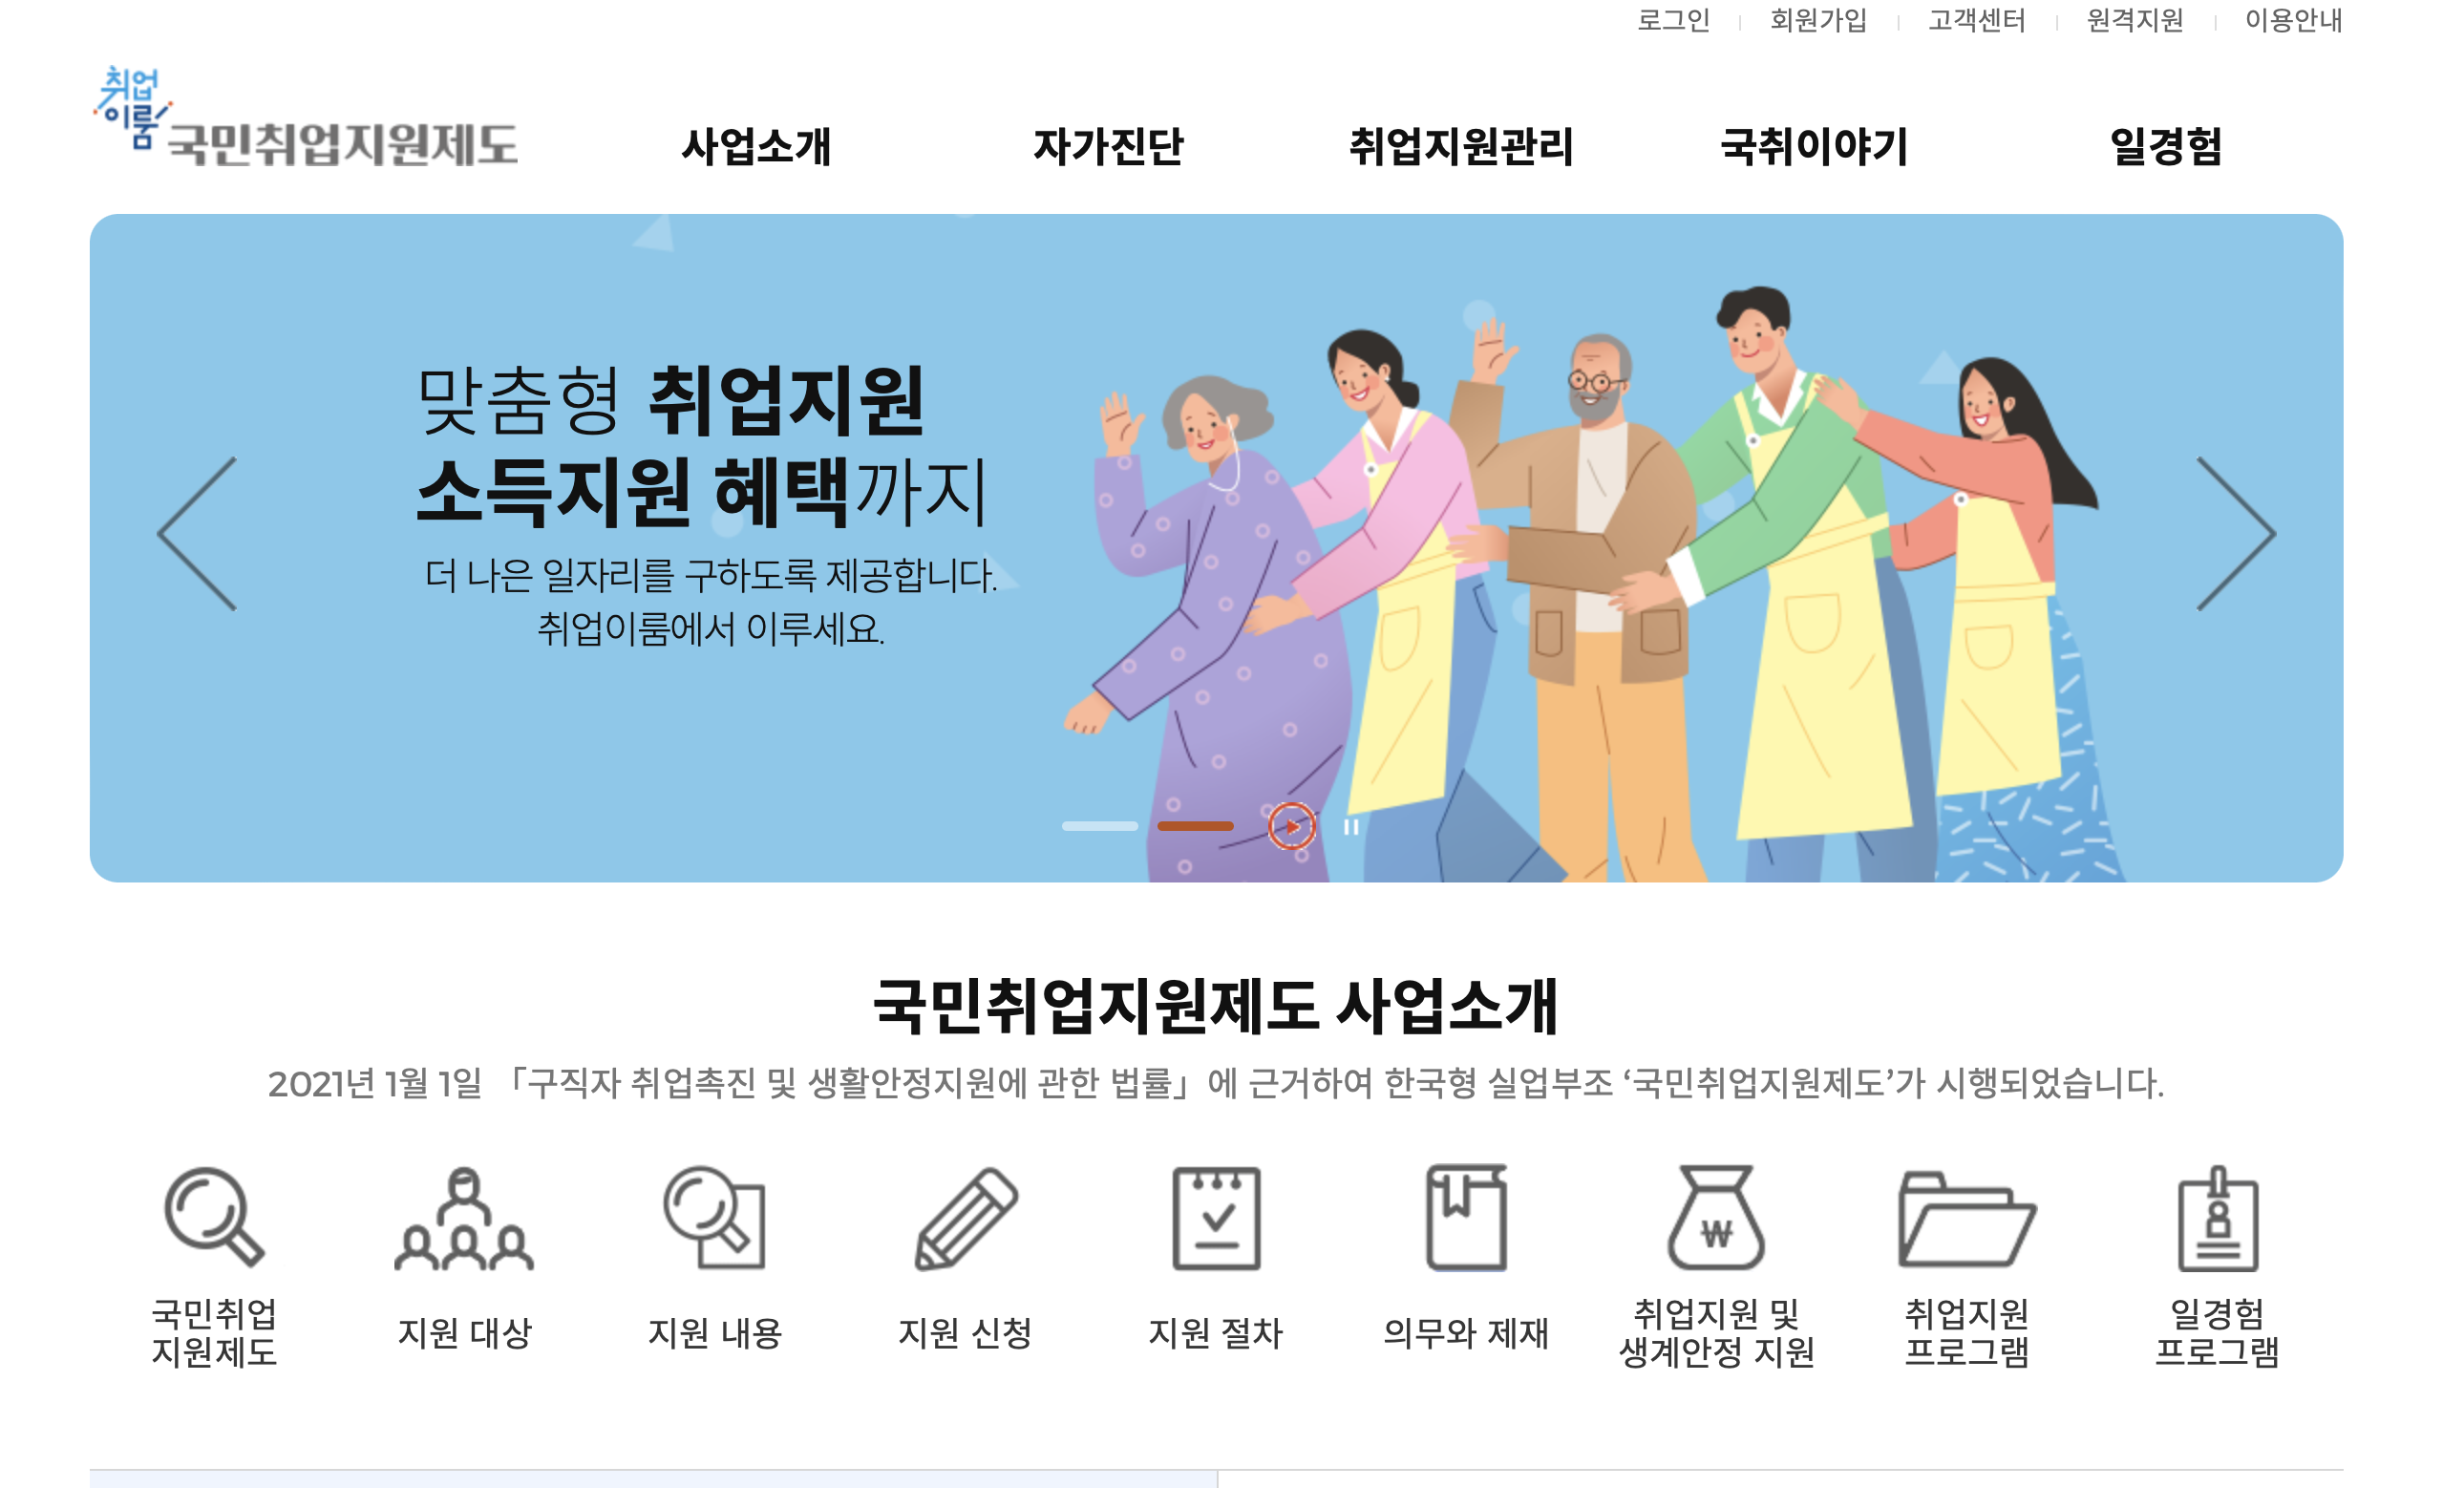 국민취업지원제도 구직촉진수당 신청안내 (https://www.kua.go.kr)